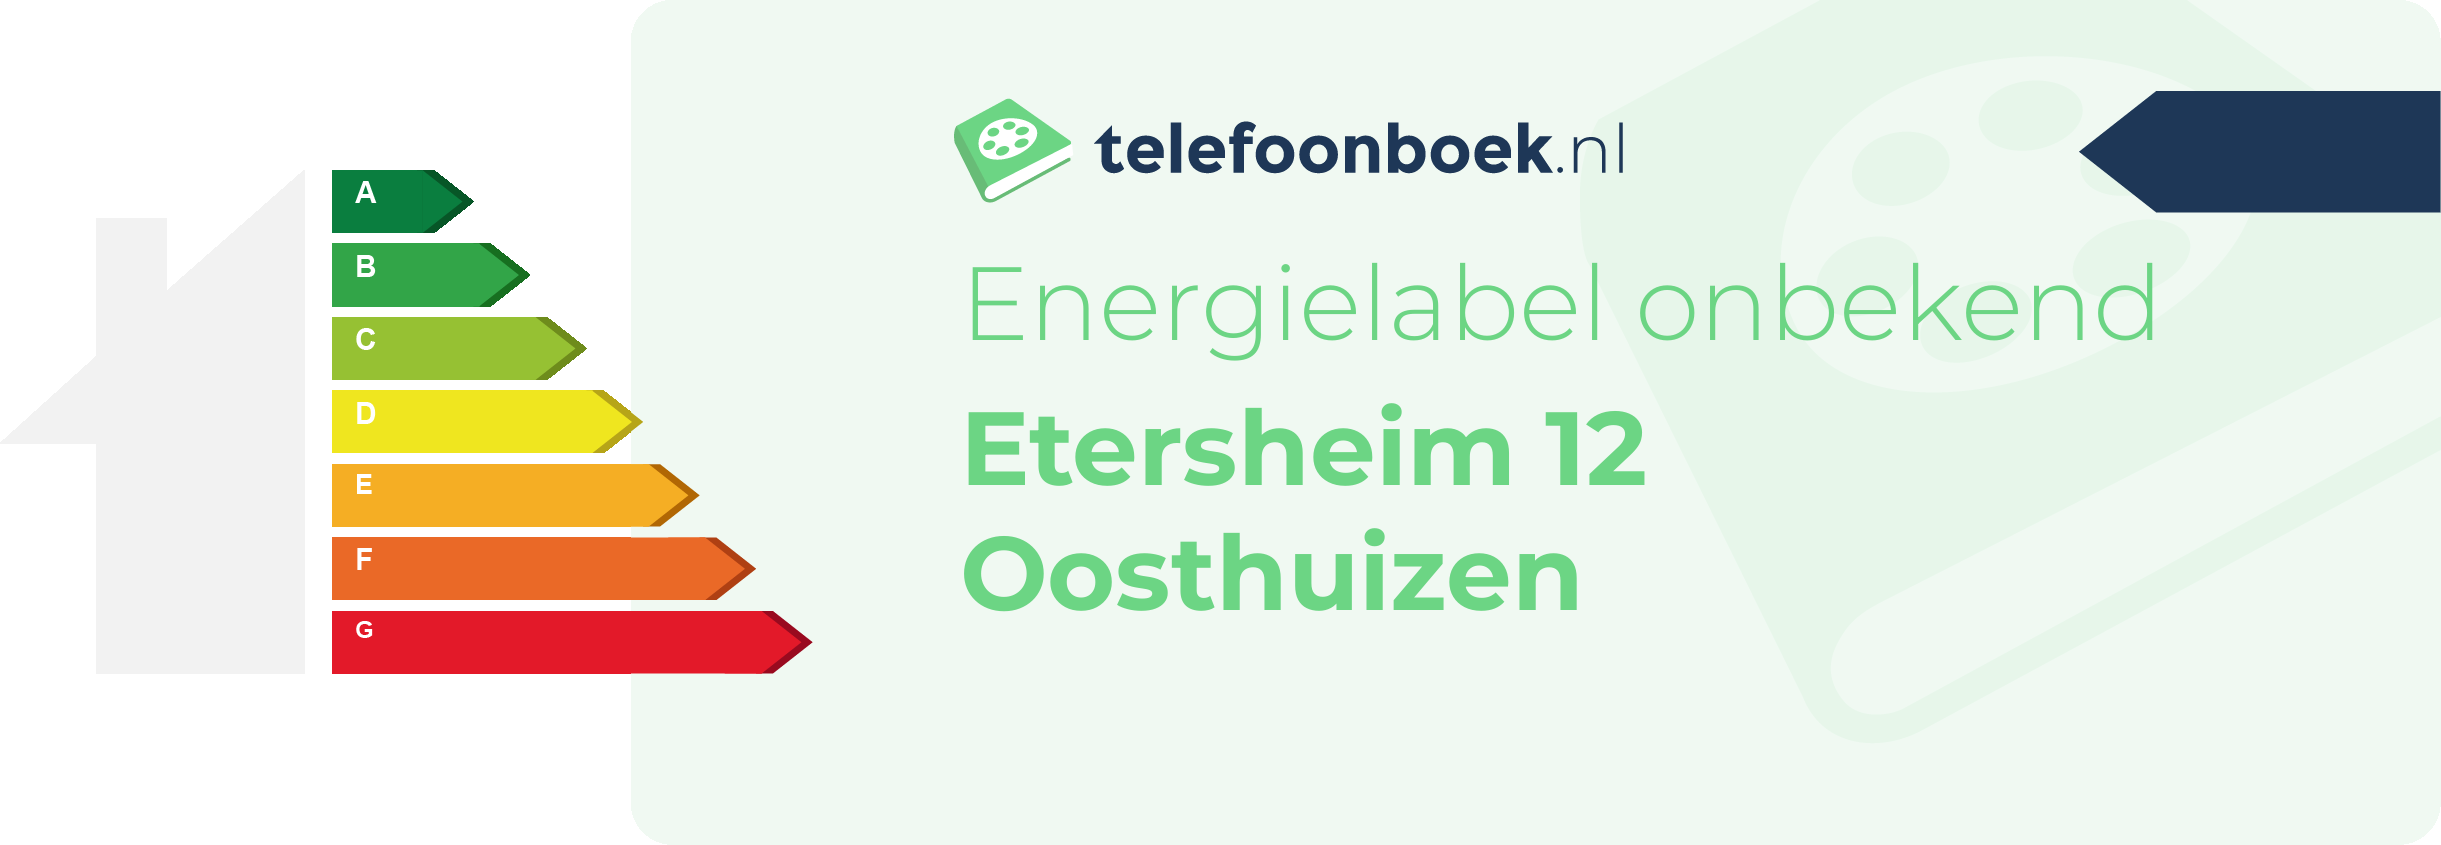 Energielabel Etersheim 12 Oosthuizen